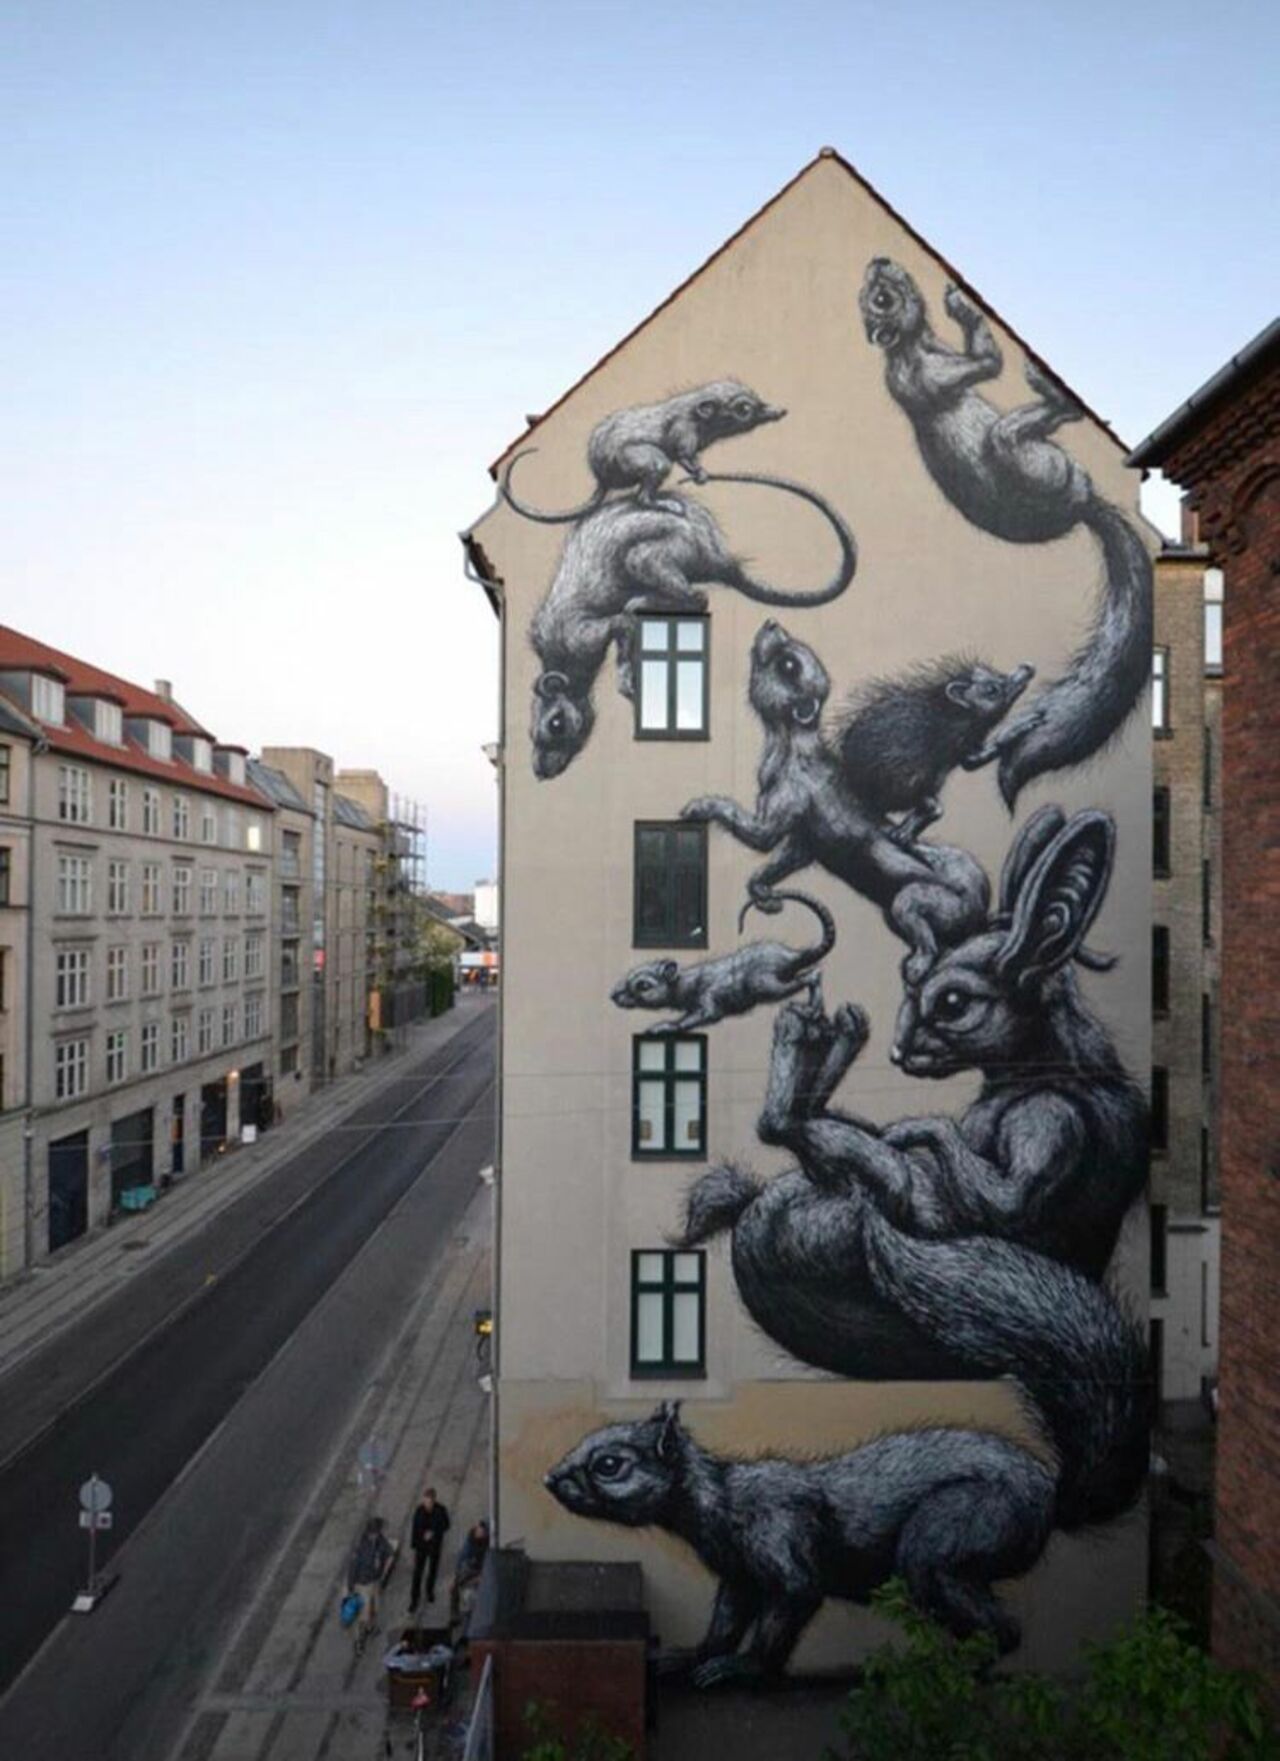 New work by ROA in Copenhagen, Denmark #streetart #mural #graffiti #art https://t.co/lNA5WZwZZ3